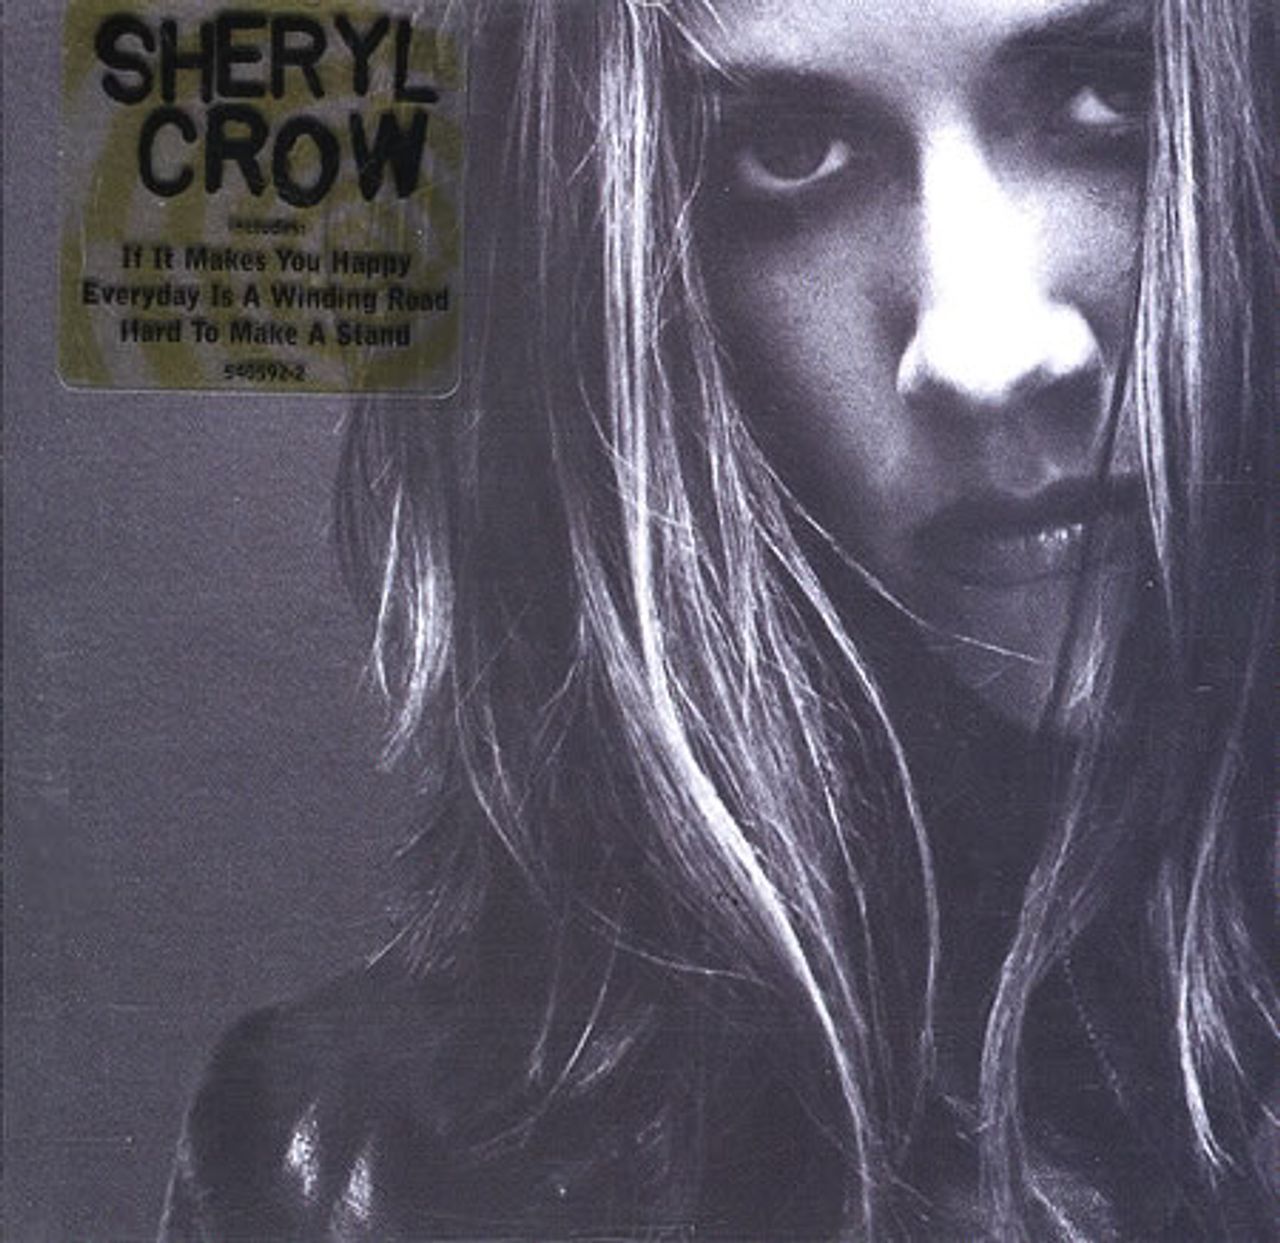 Sheryl Crow Sheryl Crow UK CD album — RareVinyl.com